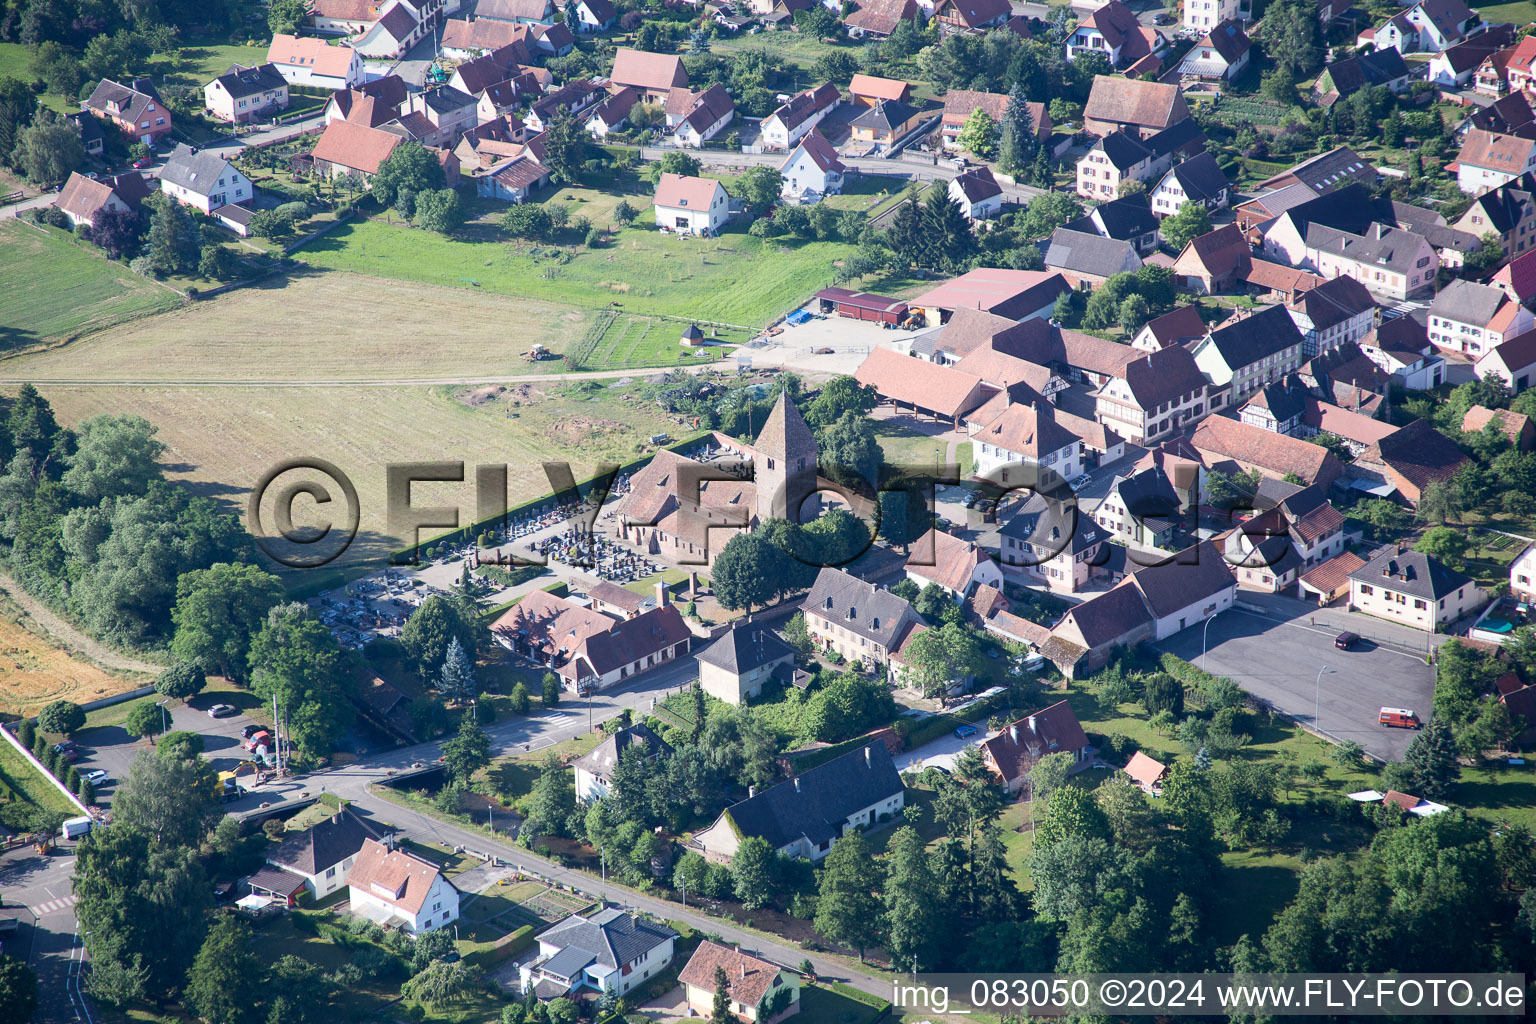 Vue aérienne de Vue des rues et des maisons des quartiers résidentiels à Altenstadt dans le département Bas Rhin, France